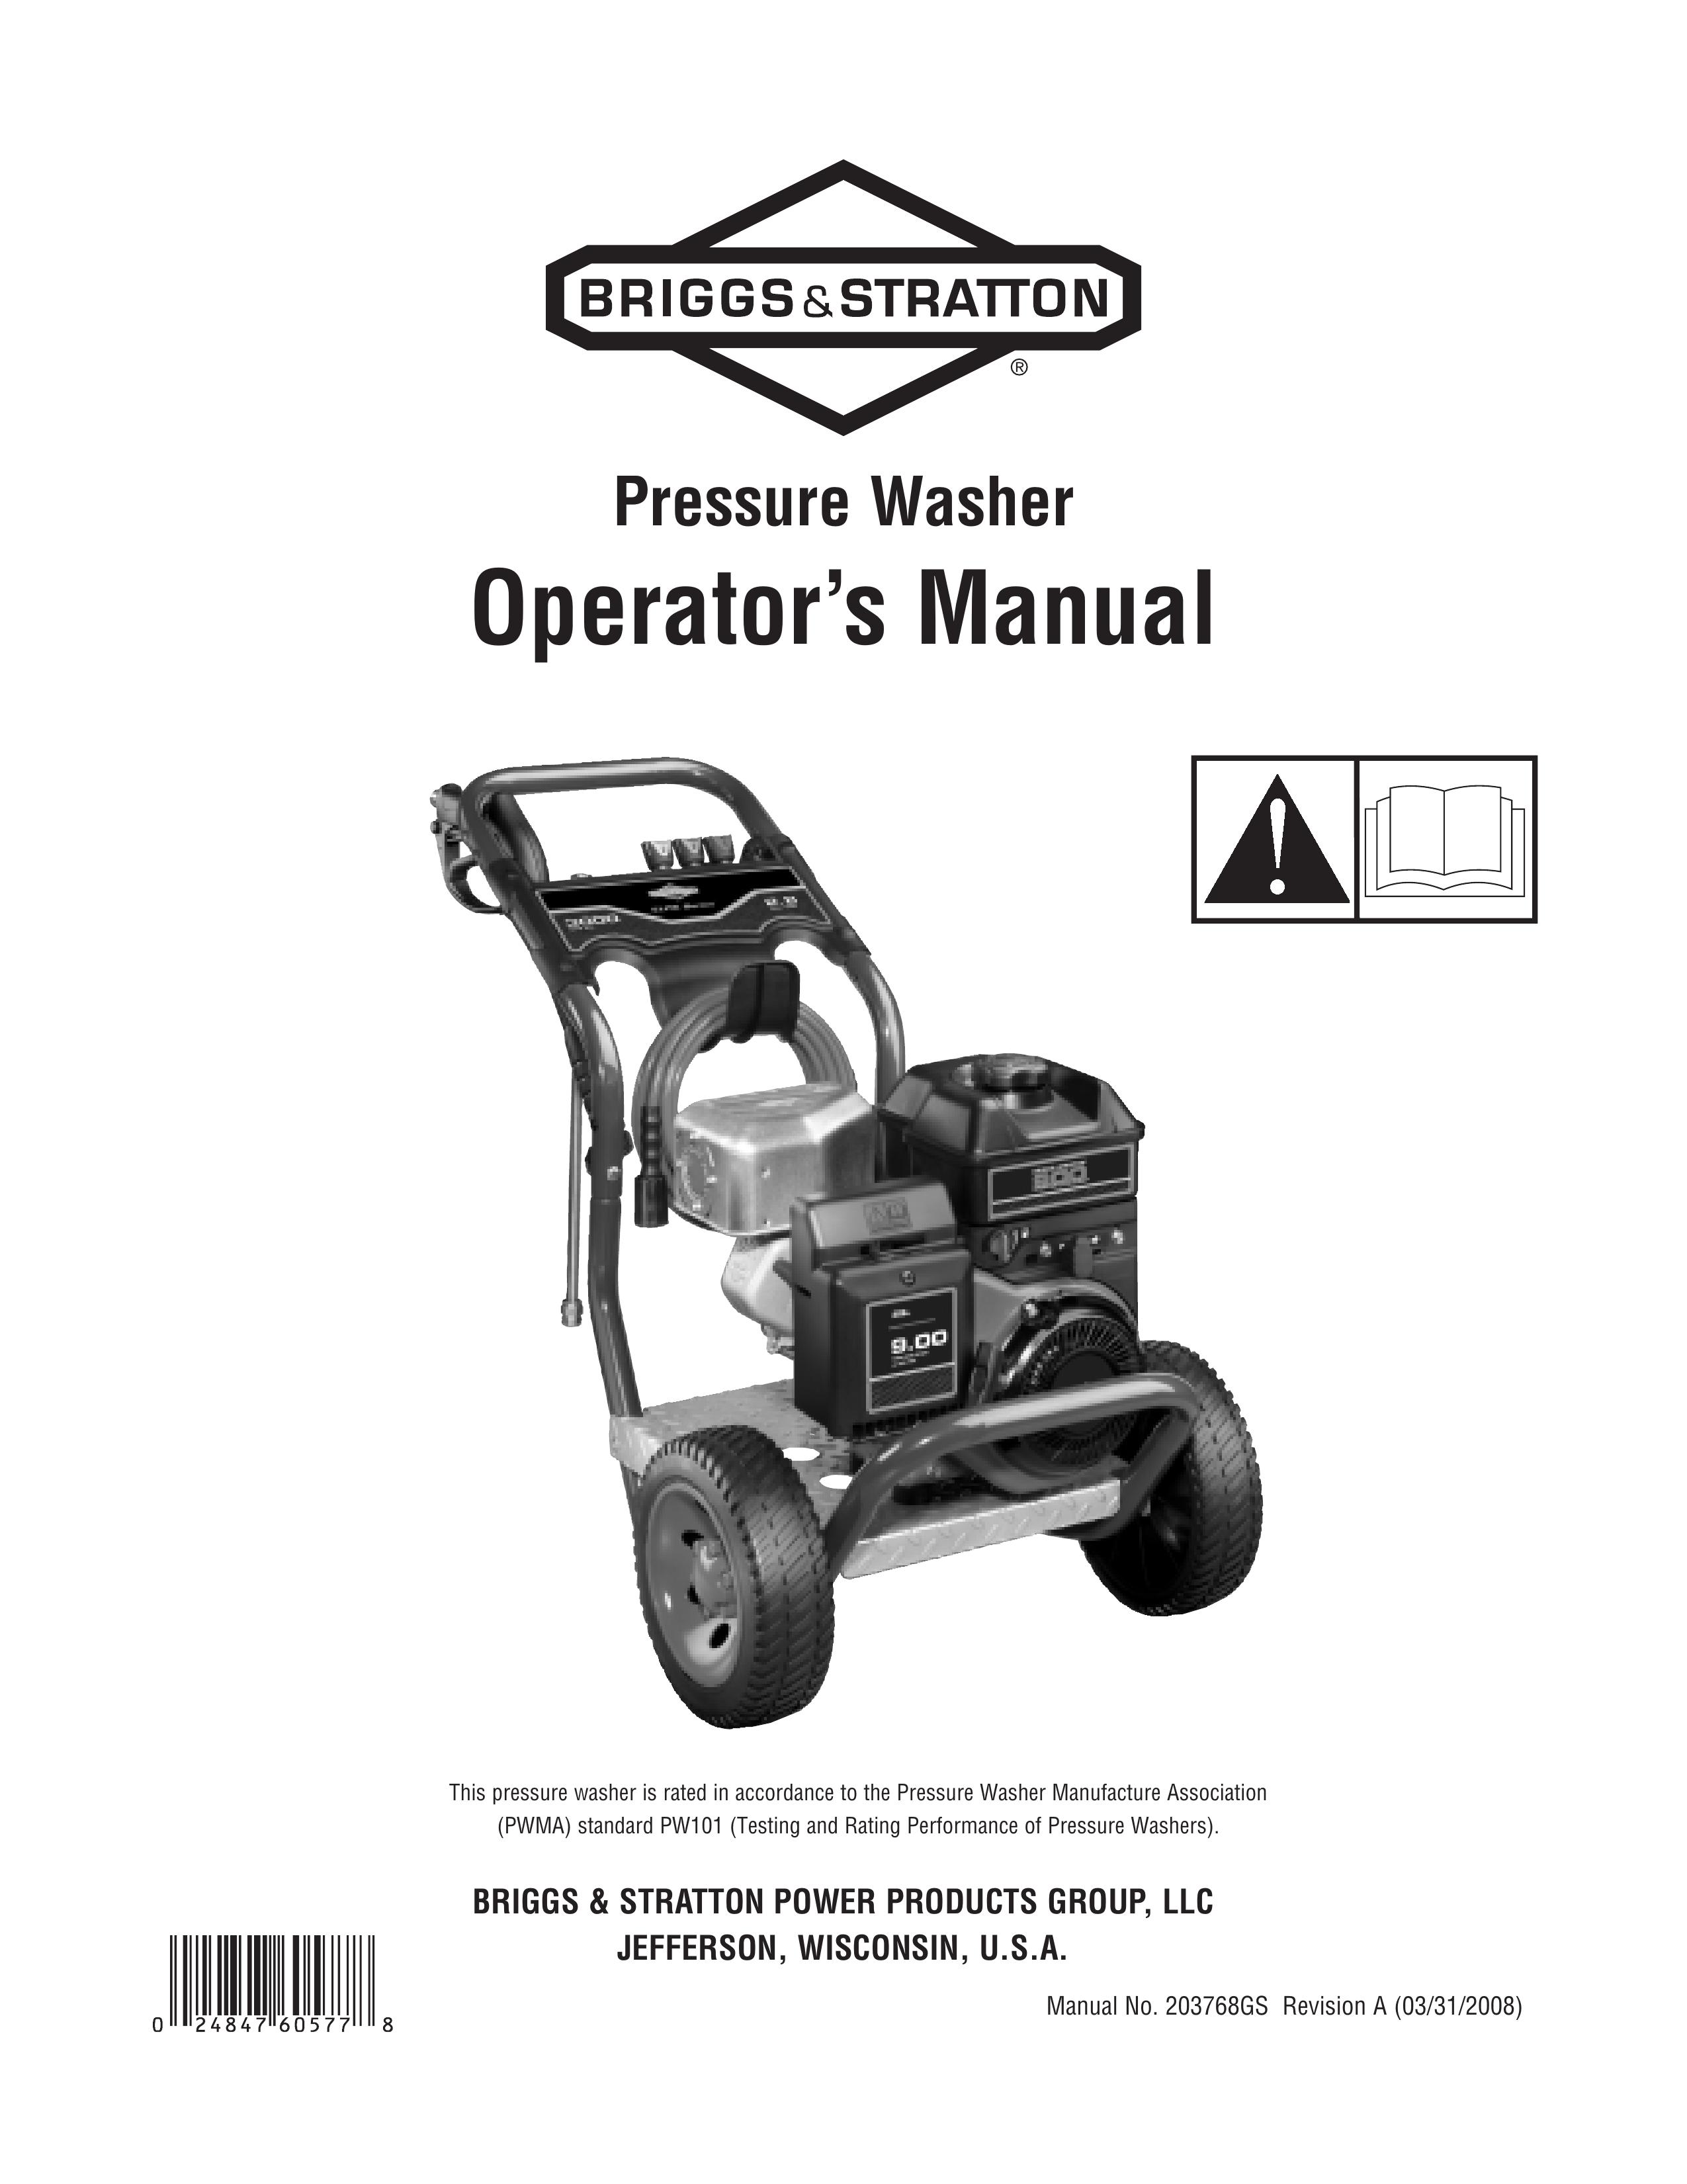 Briggs & Stratton 020274-0 Pressure Washer User Manual